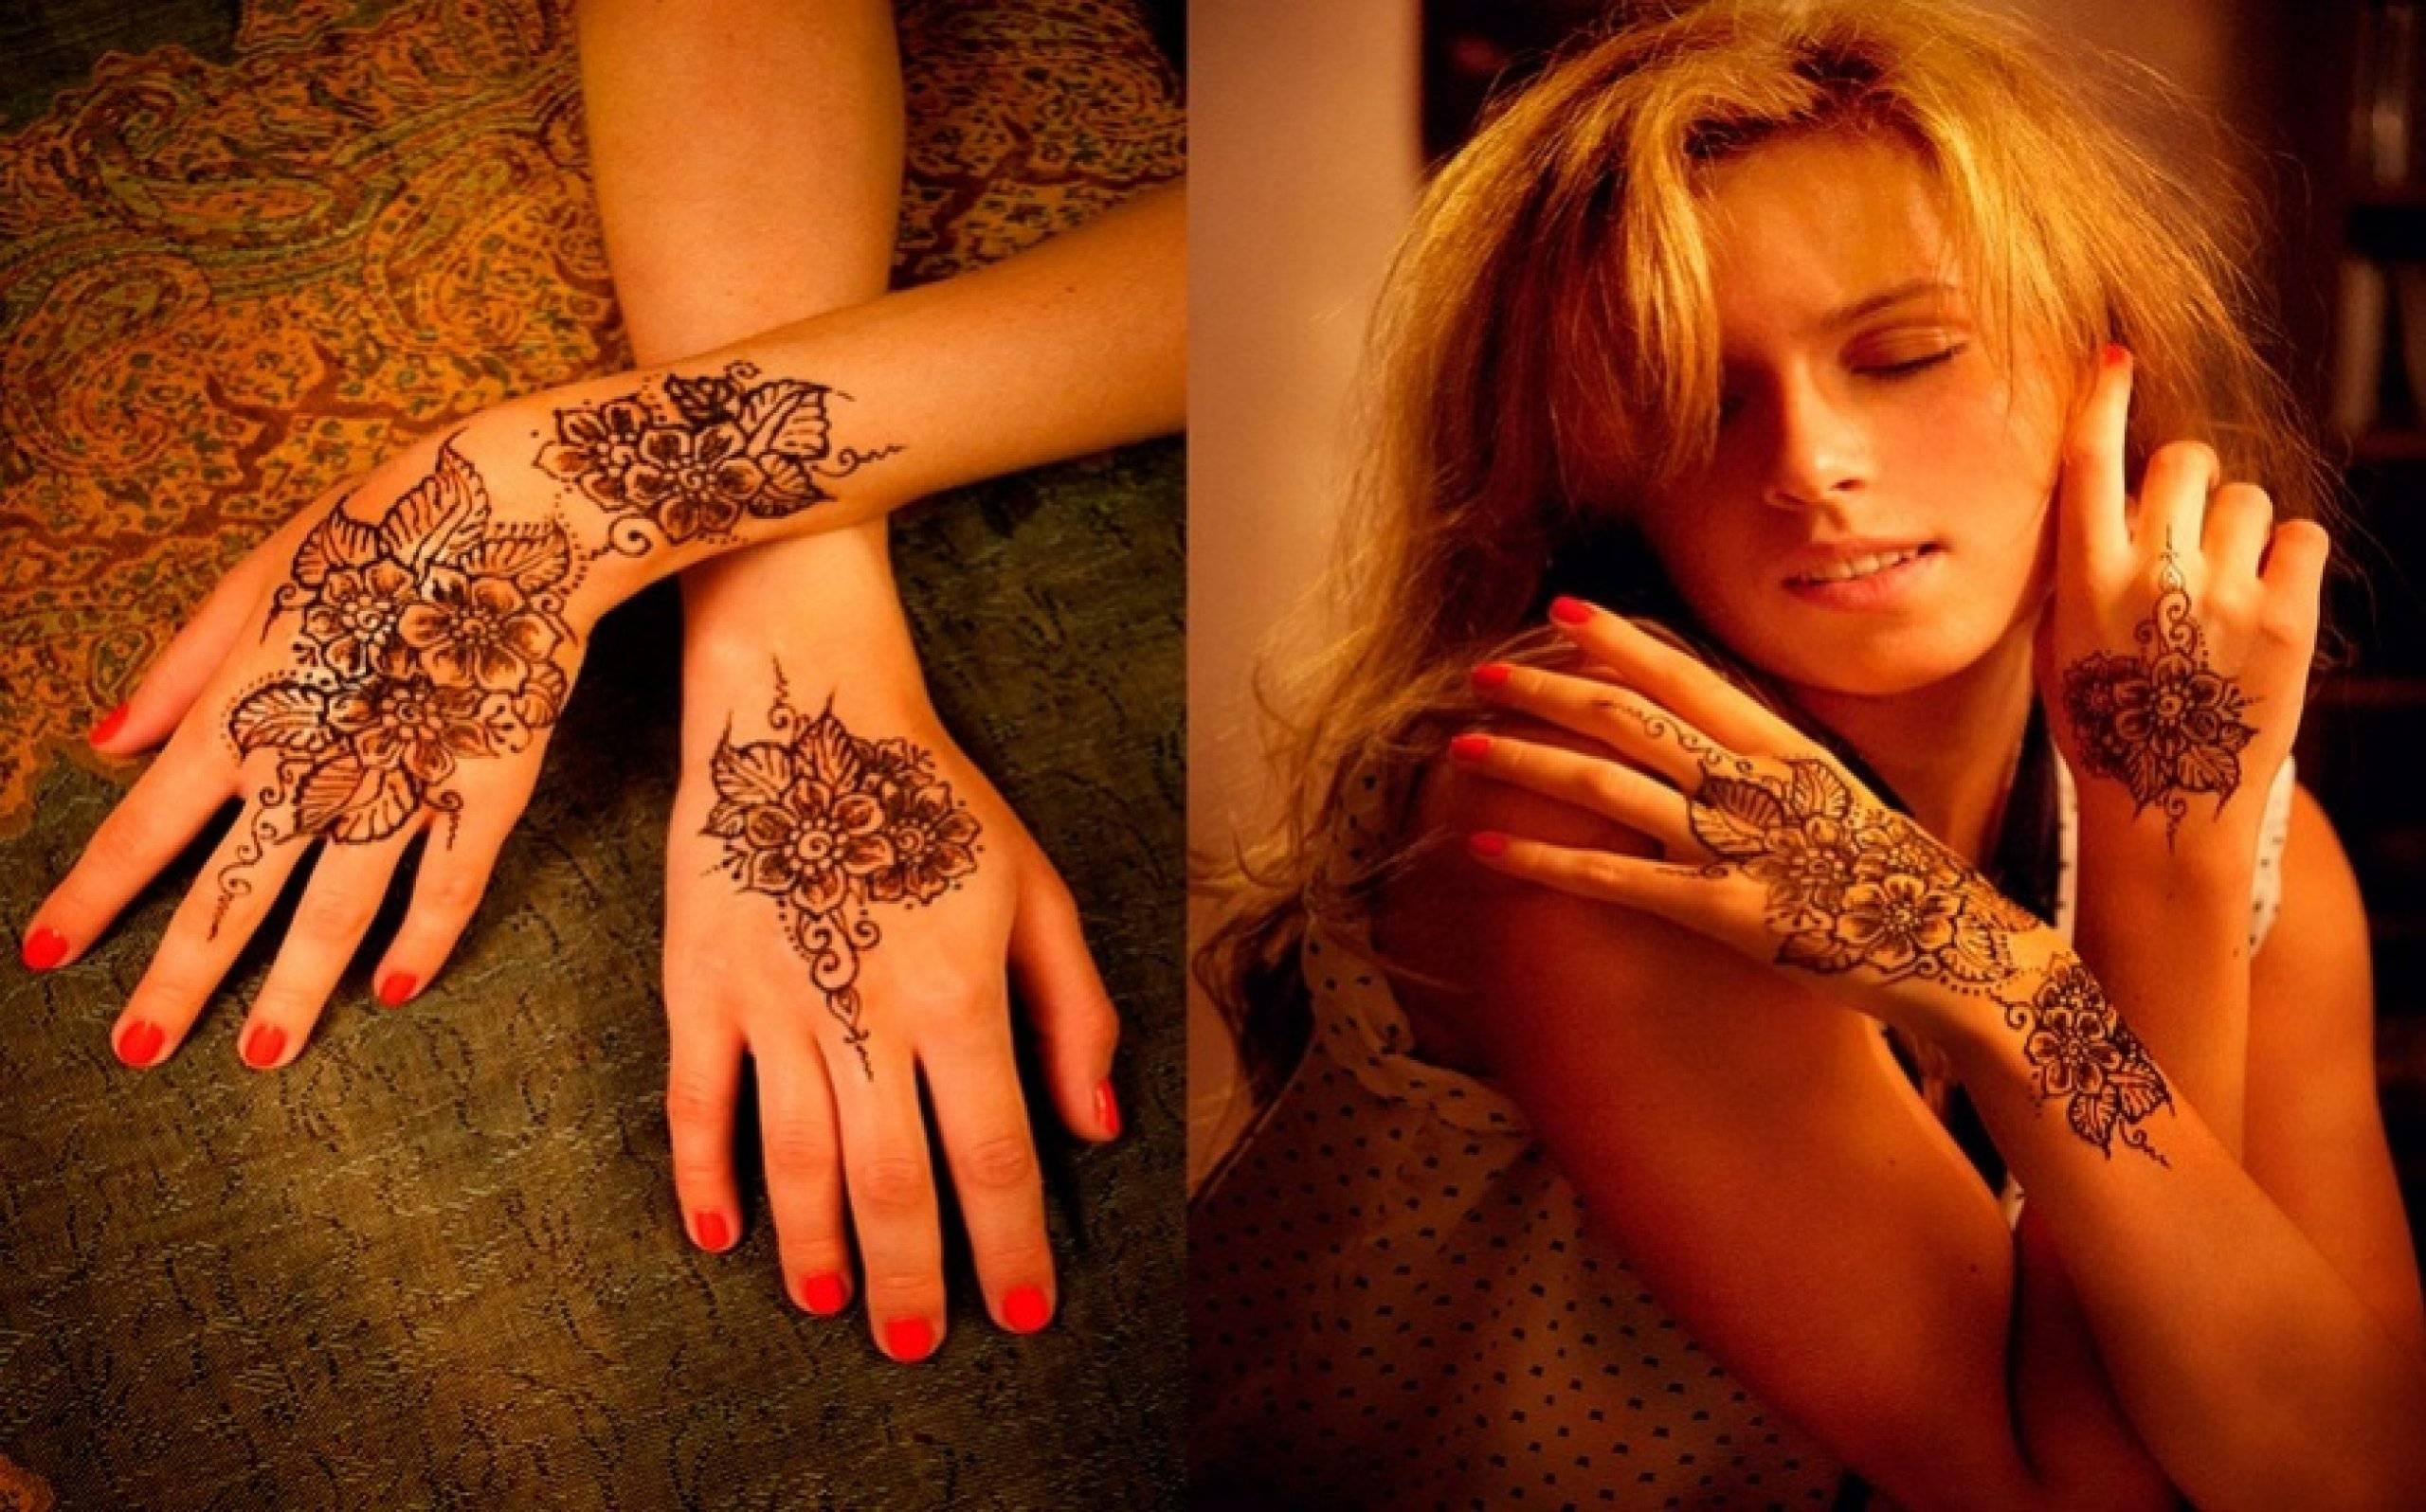 Как сделать временную татуировку: домашняя временная, хной, сколько держится переводная, бумага для тату, краска, набор, салоны временных тату | marykay-4u.ru